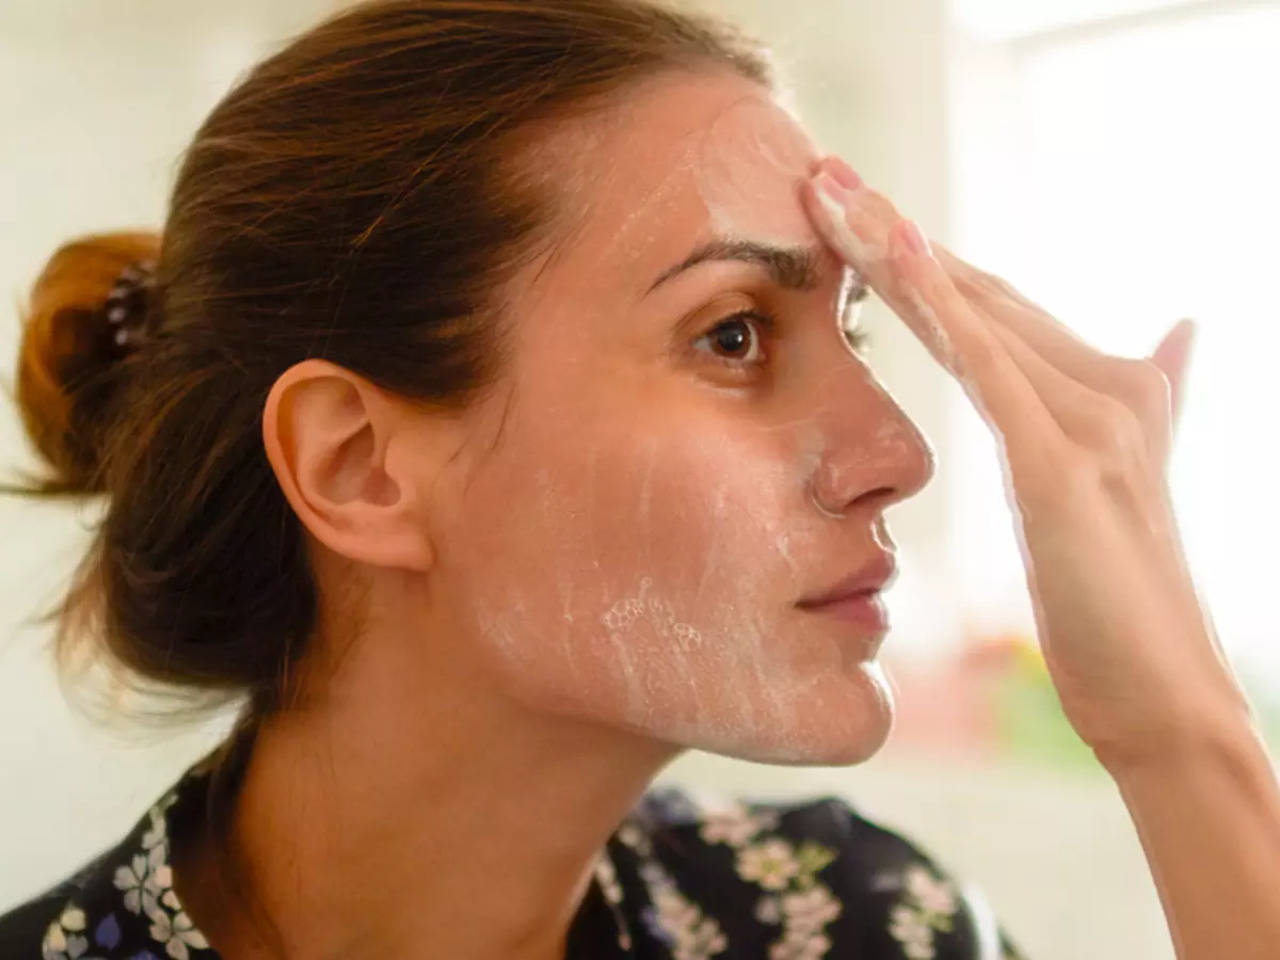 Sammentræf I hele verden millimeter Skincare Tips: Tips to treat skin burns | - Times of India